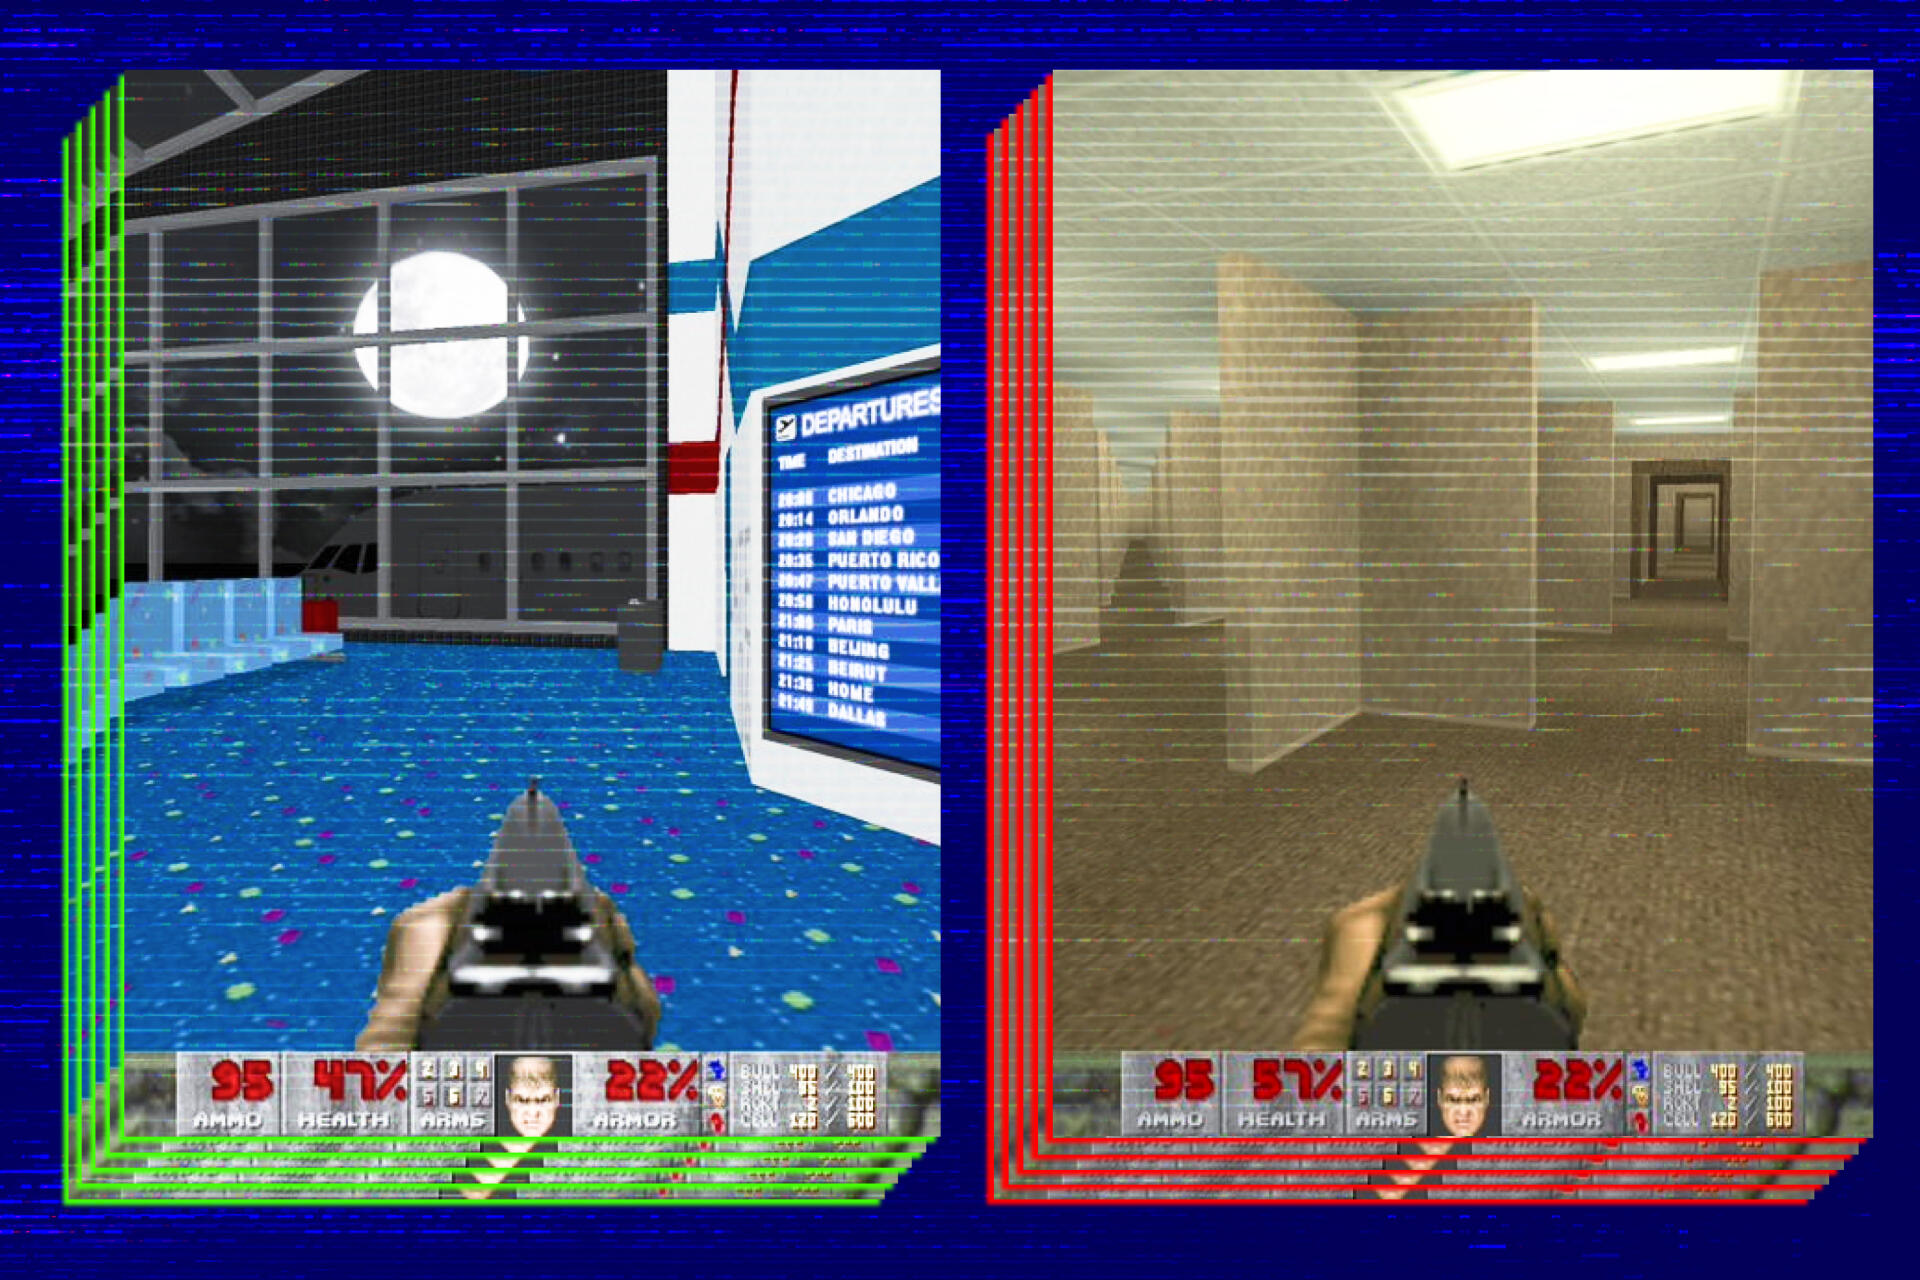 Si on tente de tricher en passant à travers les murs, le joueur peut vite se retrouver coincé dans des lieux insolites et inquiétants.